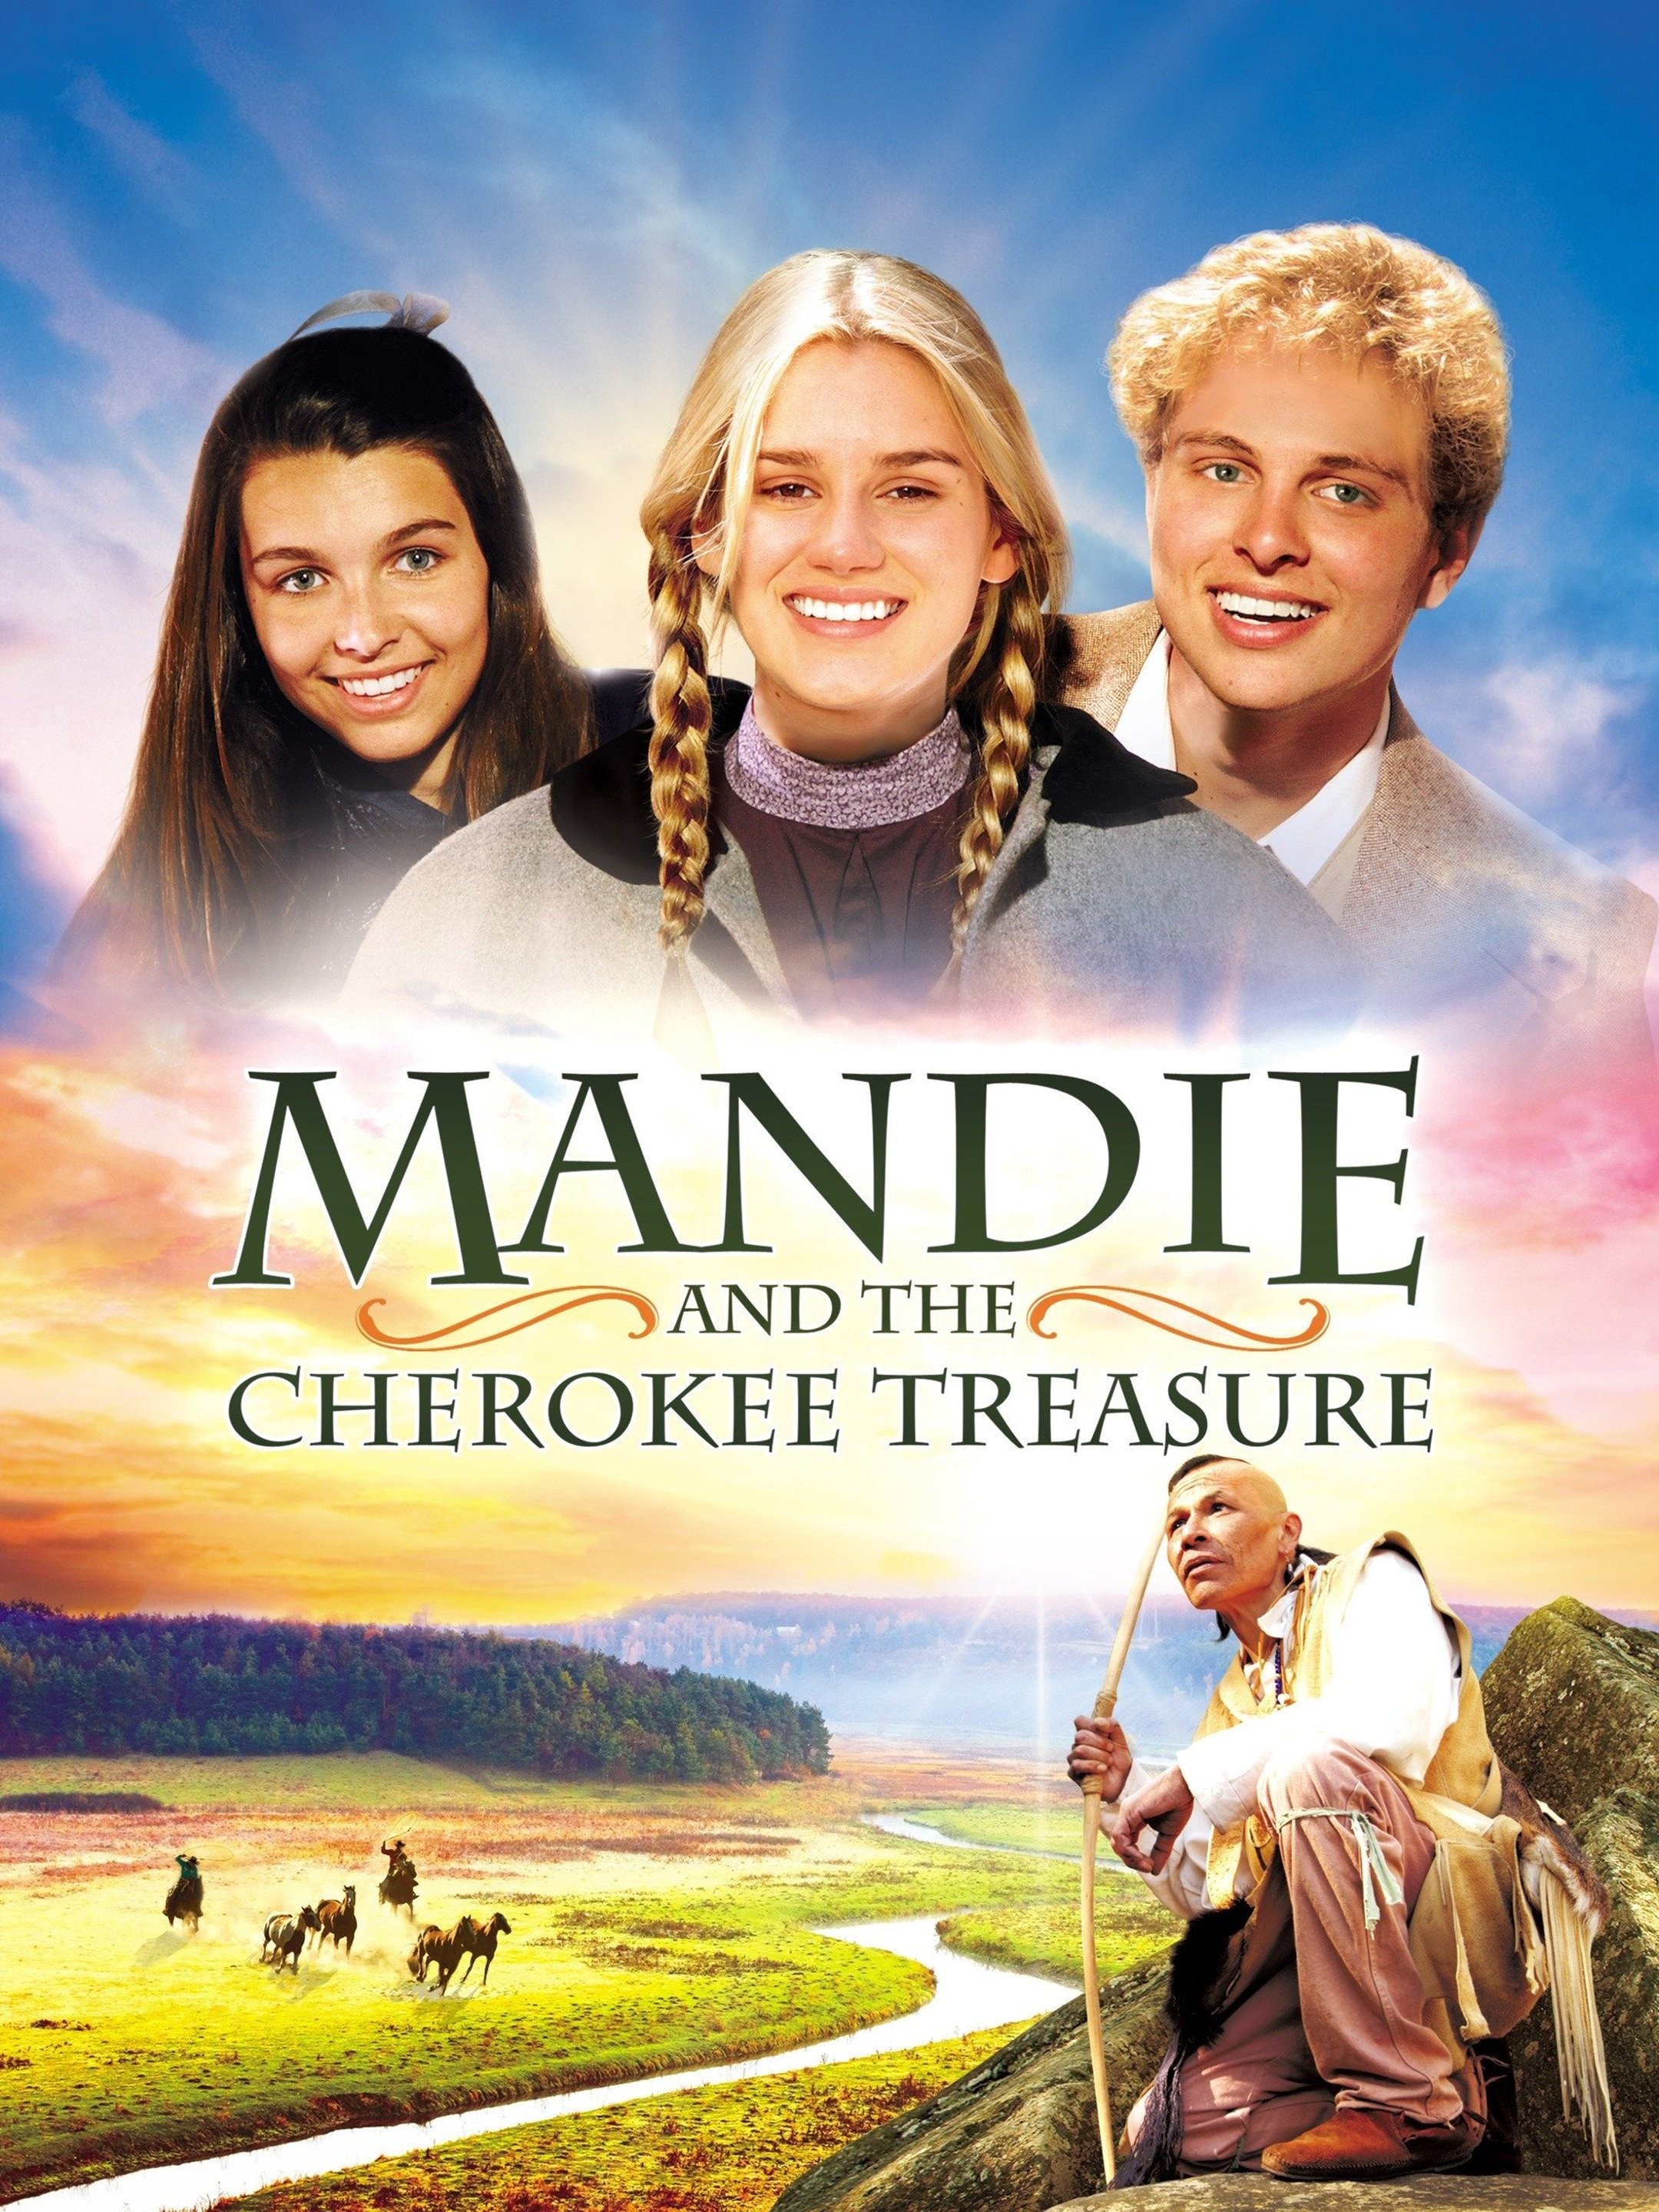 Mandie and the Cherokee Treasure - Rotten Tomatoes